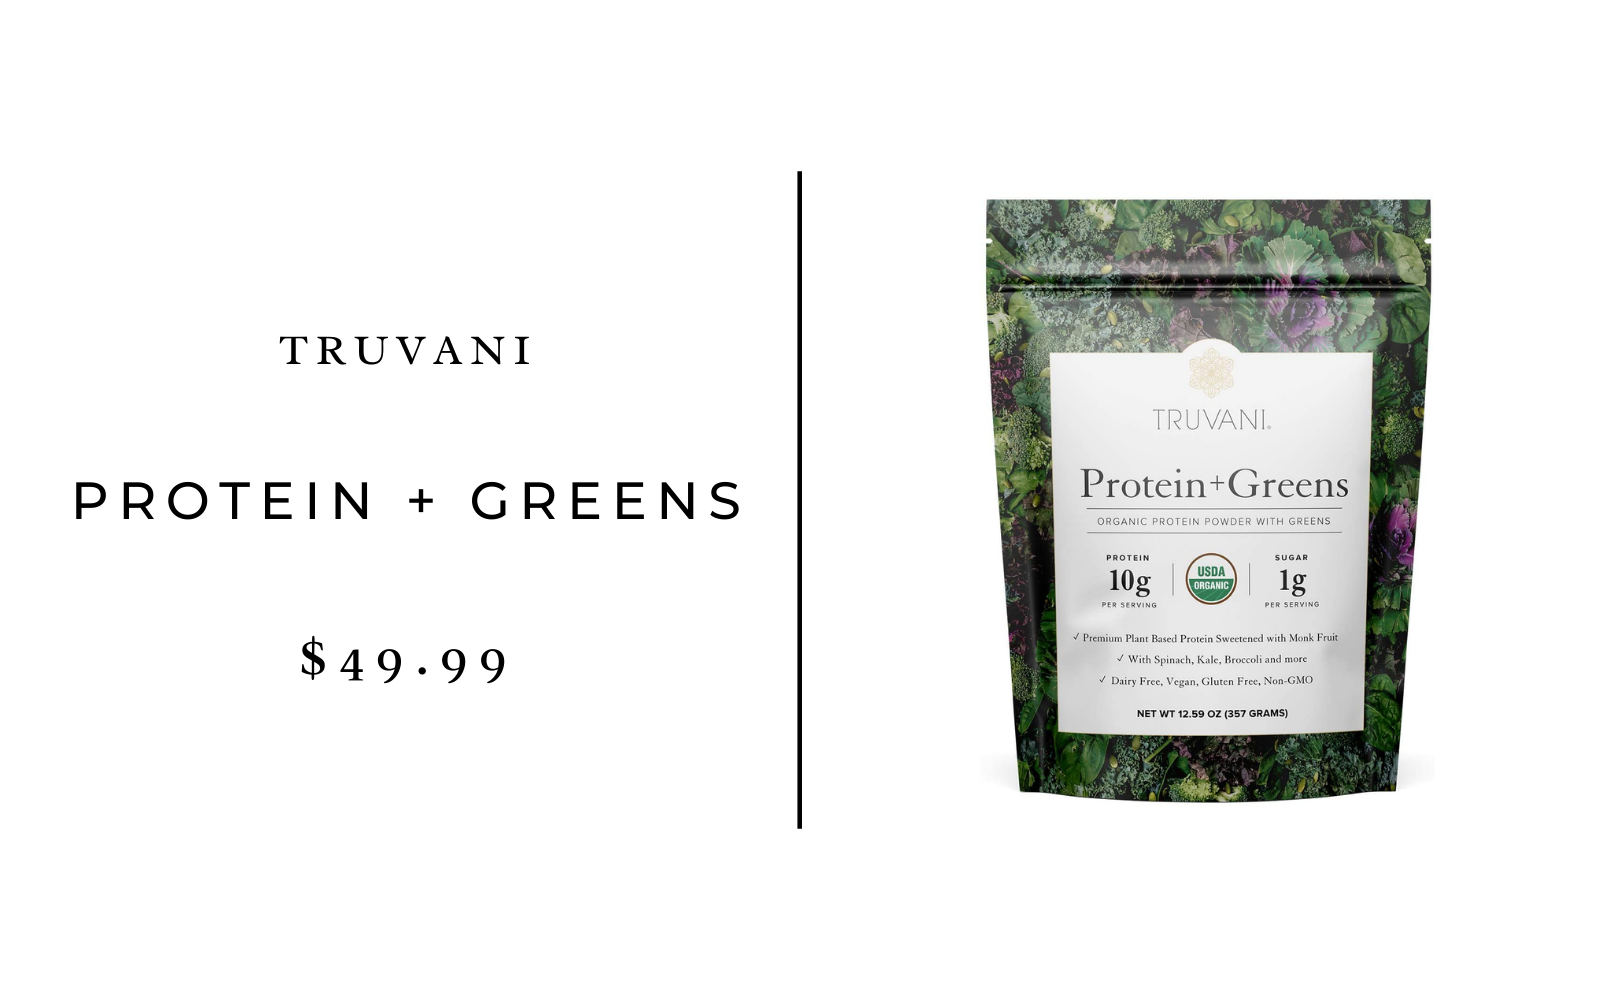 Truvani Protein + Greens